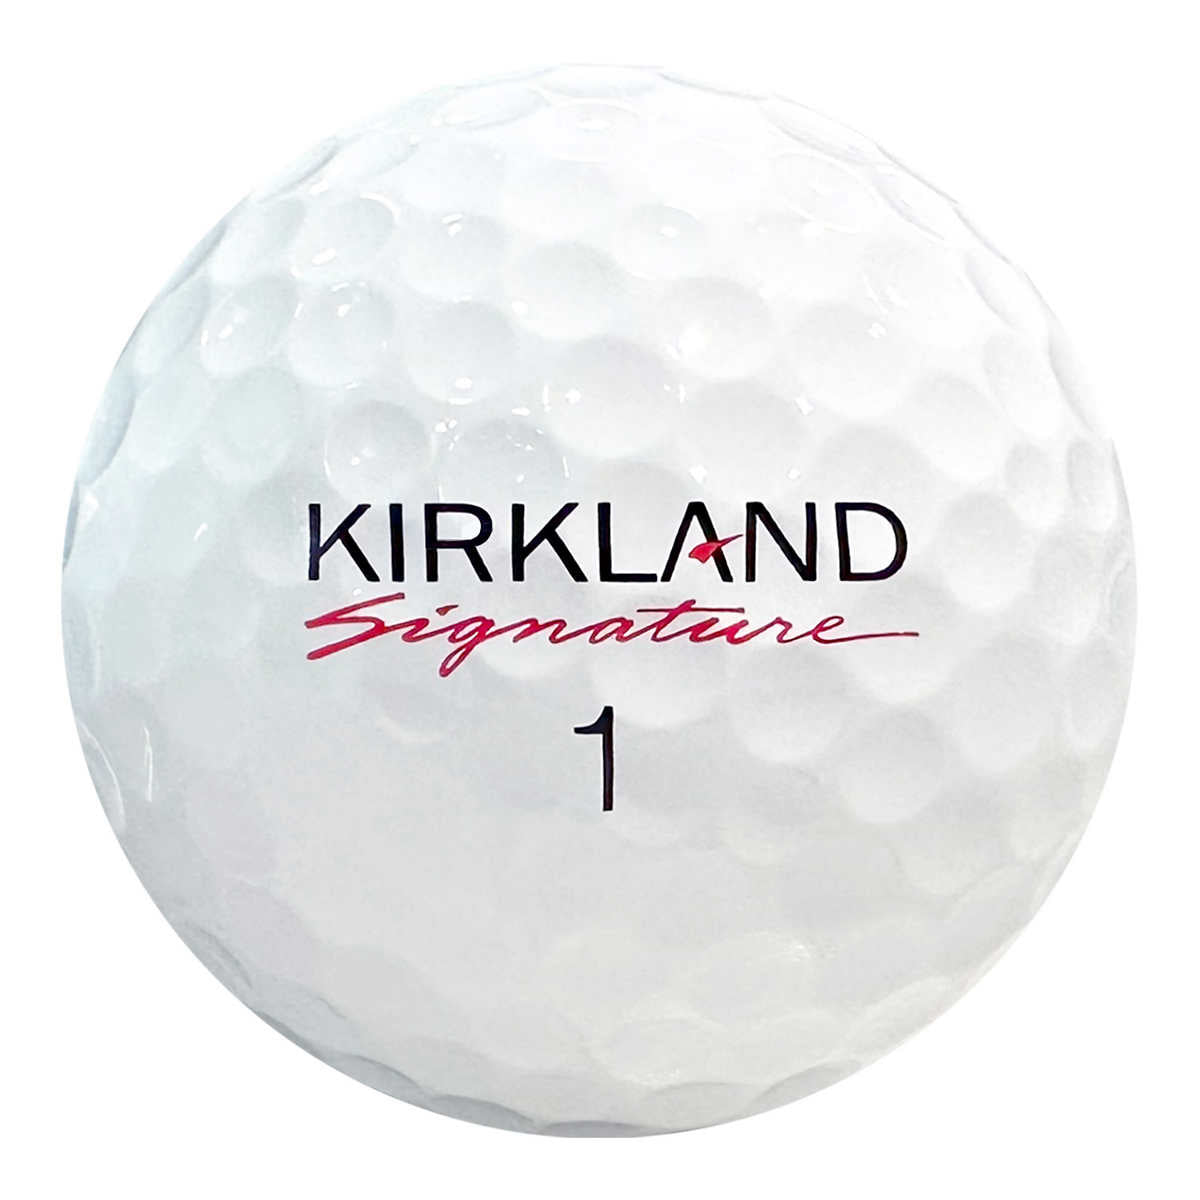 kirkland-signature-3-balles-golf-performance-+-ball-pack-5